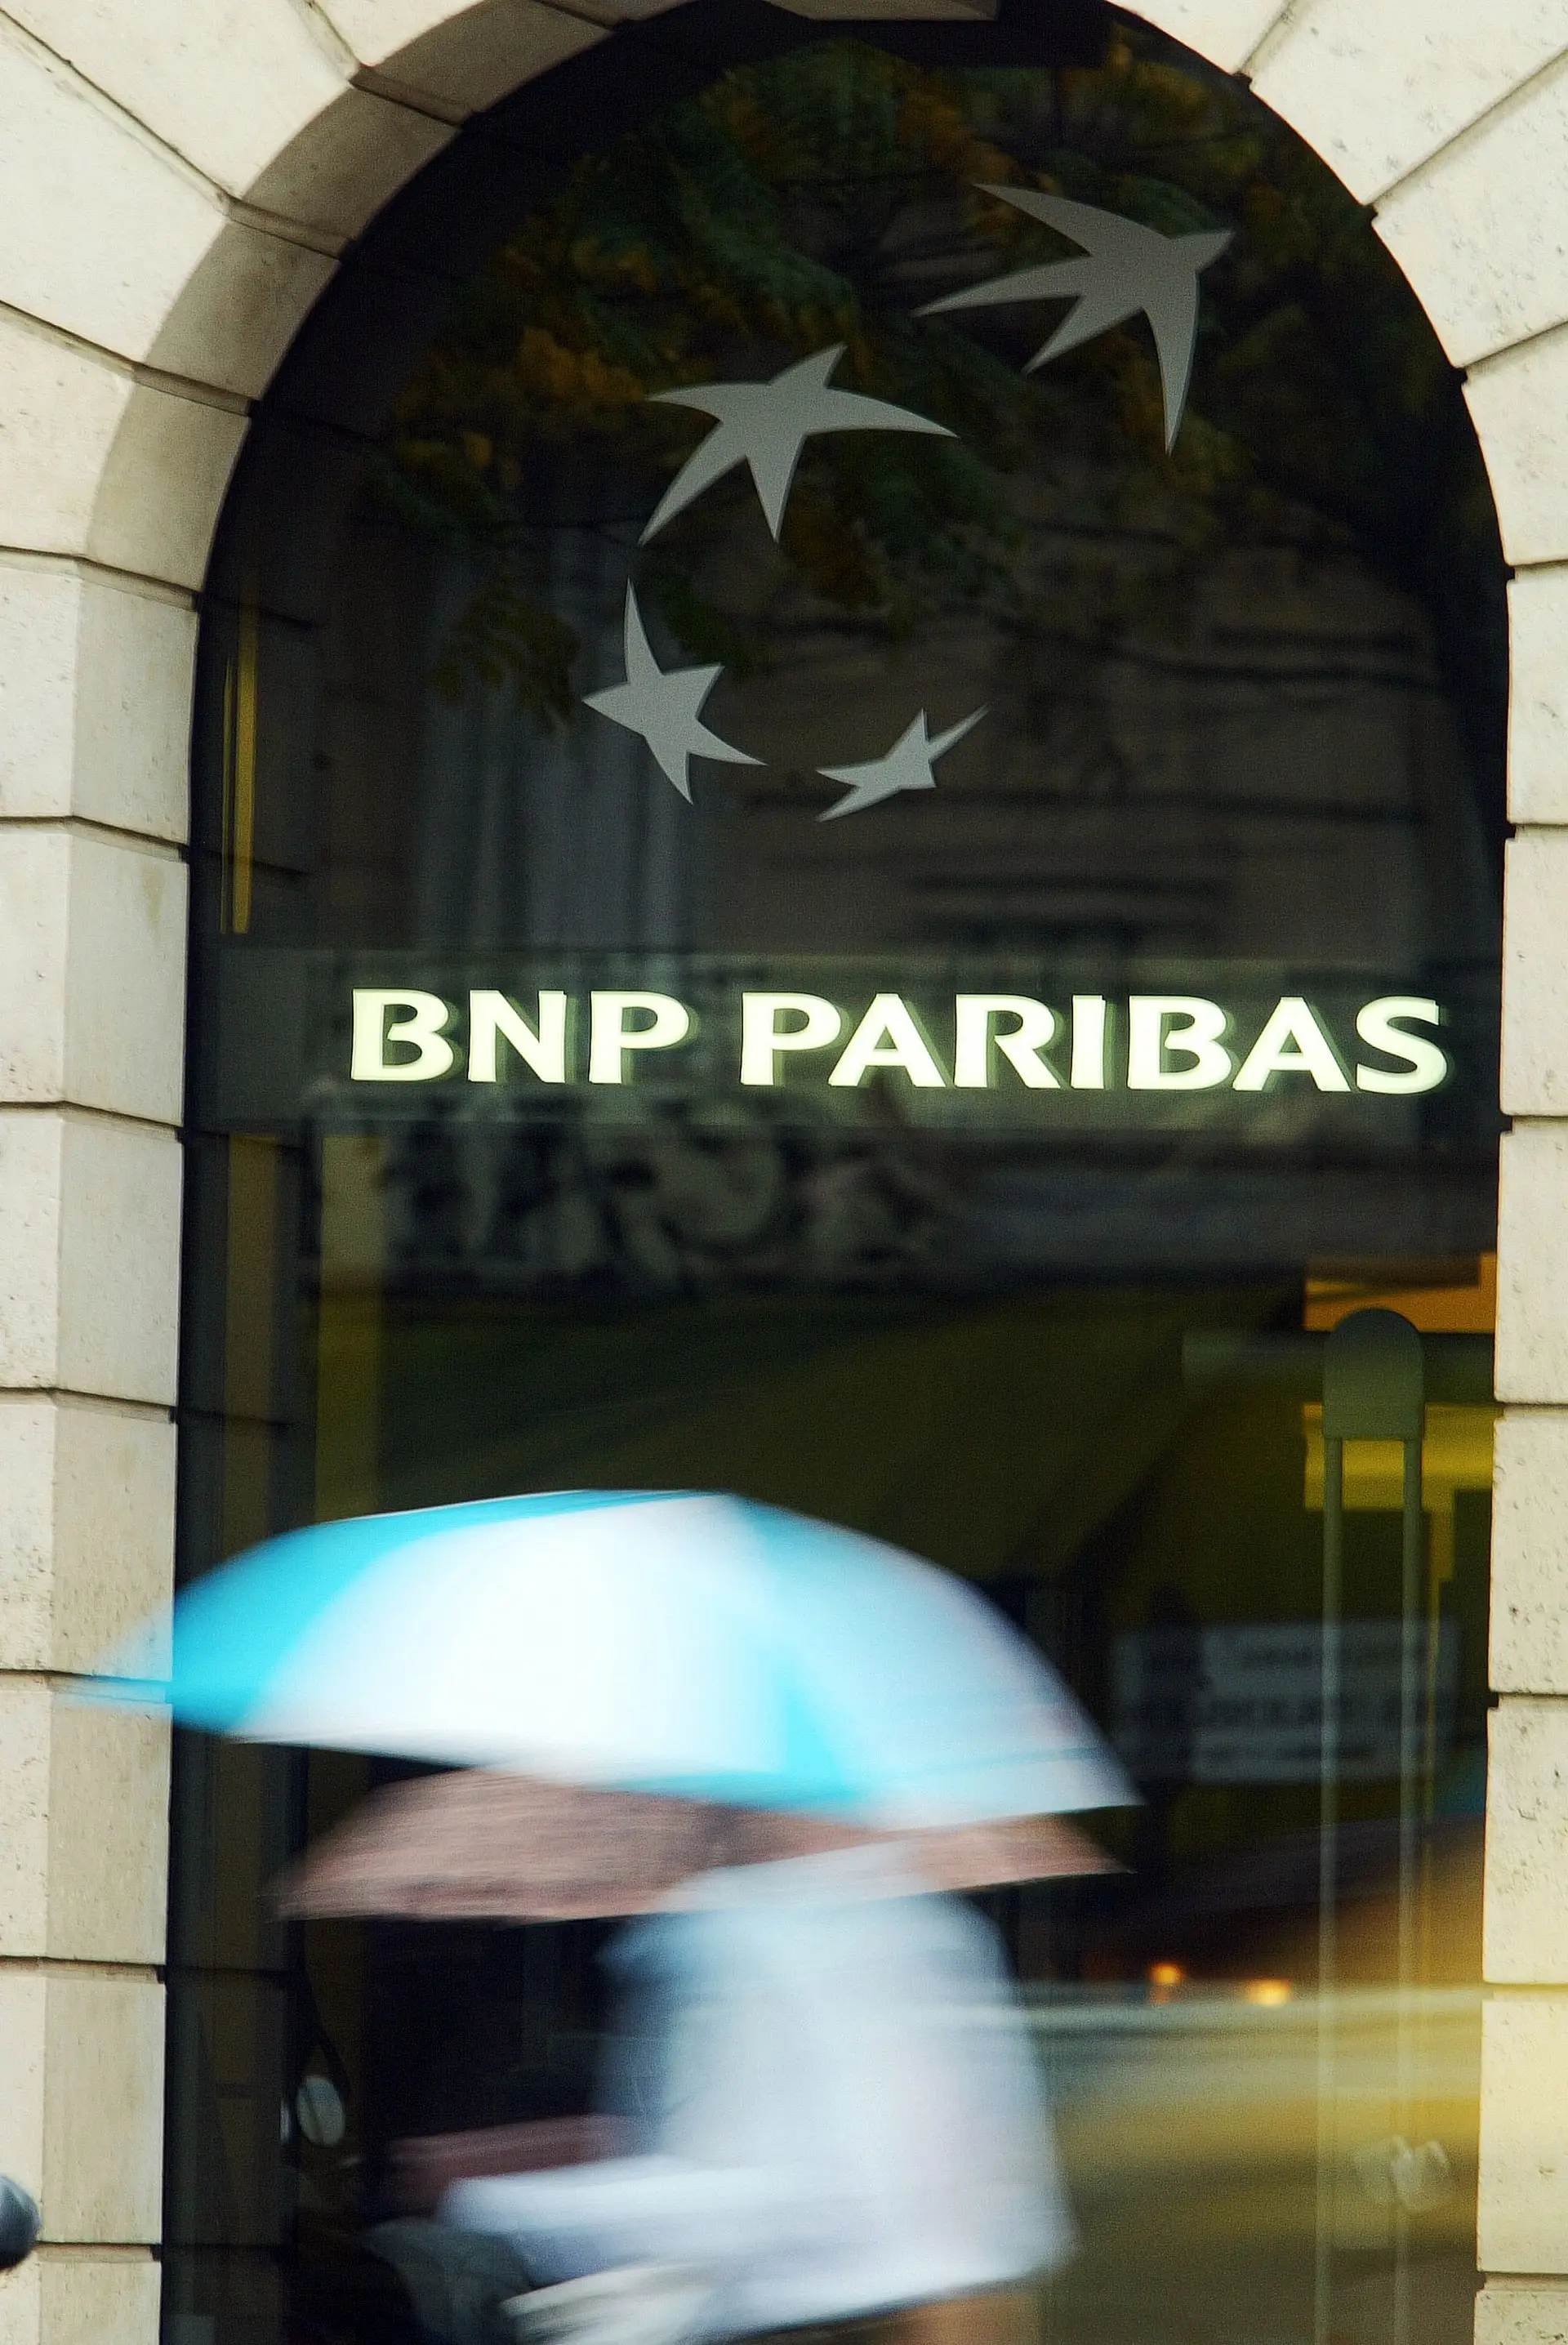 Representantes do BNP Paribas em Portugal deixam de participar em debates onde não haja mulheres